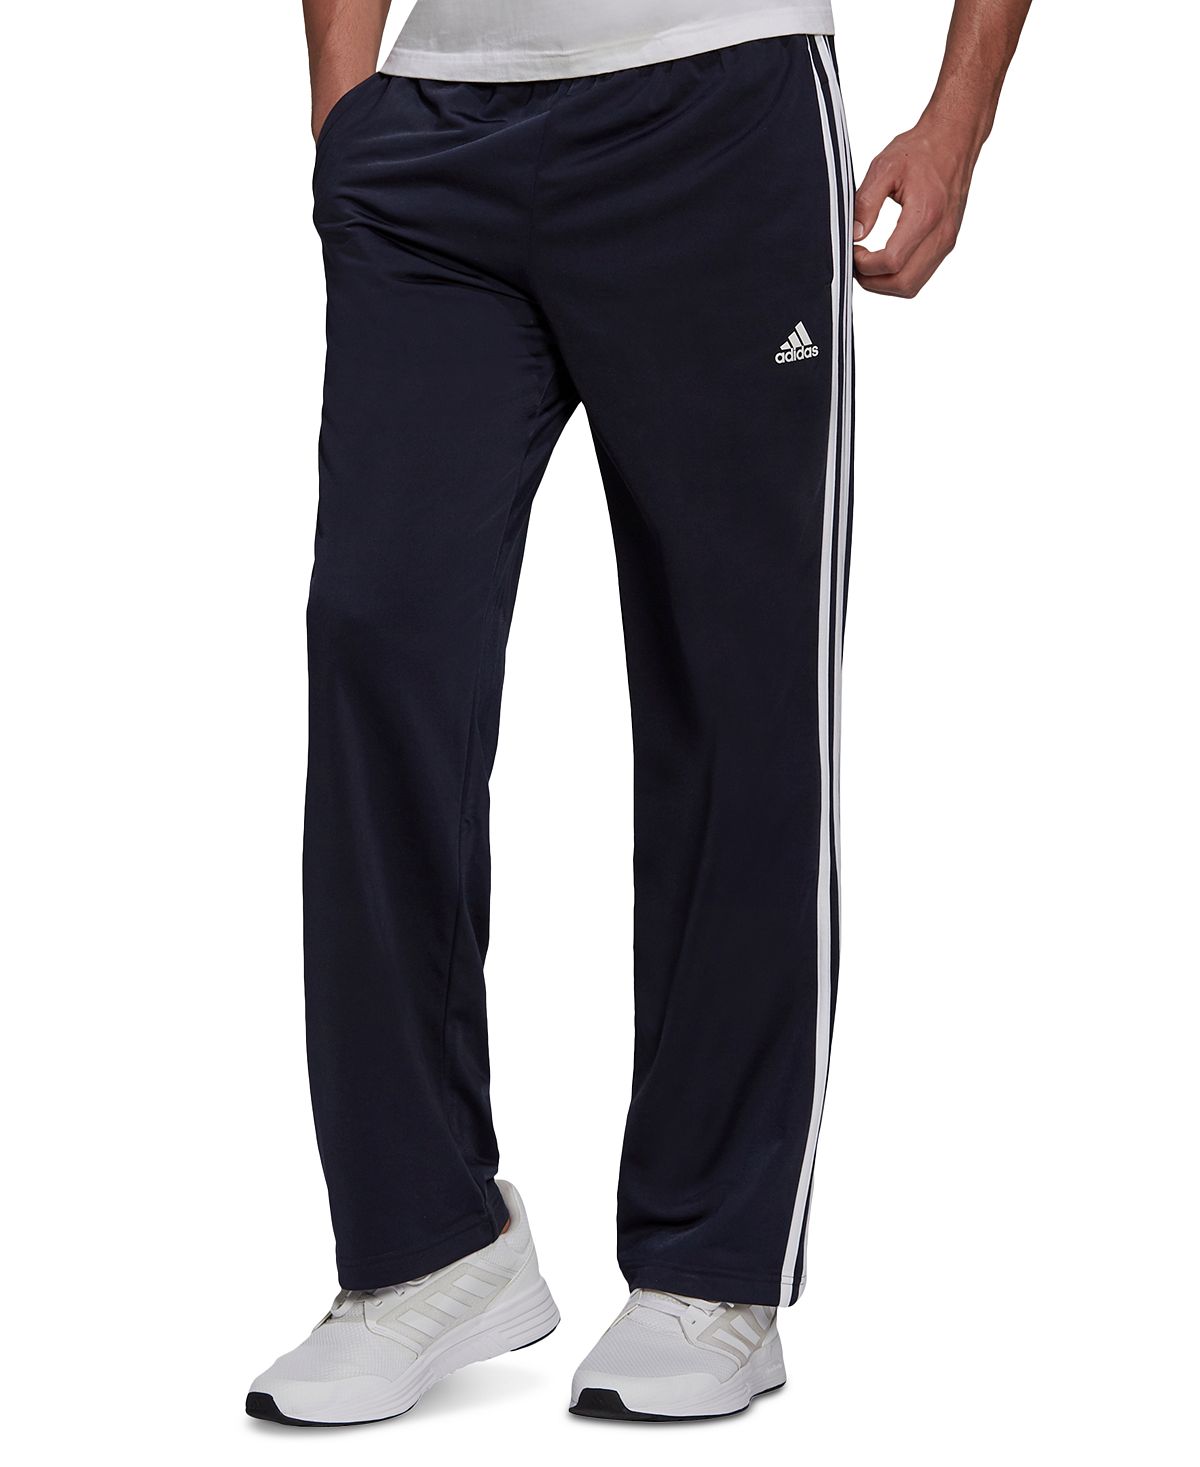 Мужские спортивные брюки Primegreen Essentials с открытым подолом и 3 полосками для разминки adidas цена и фото